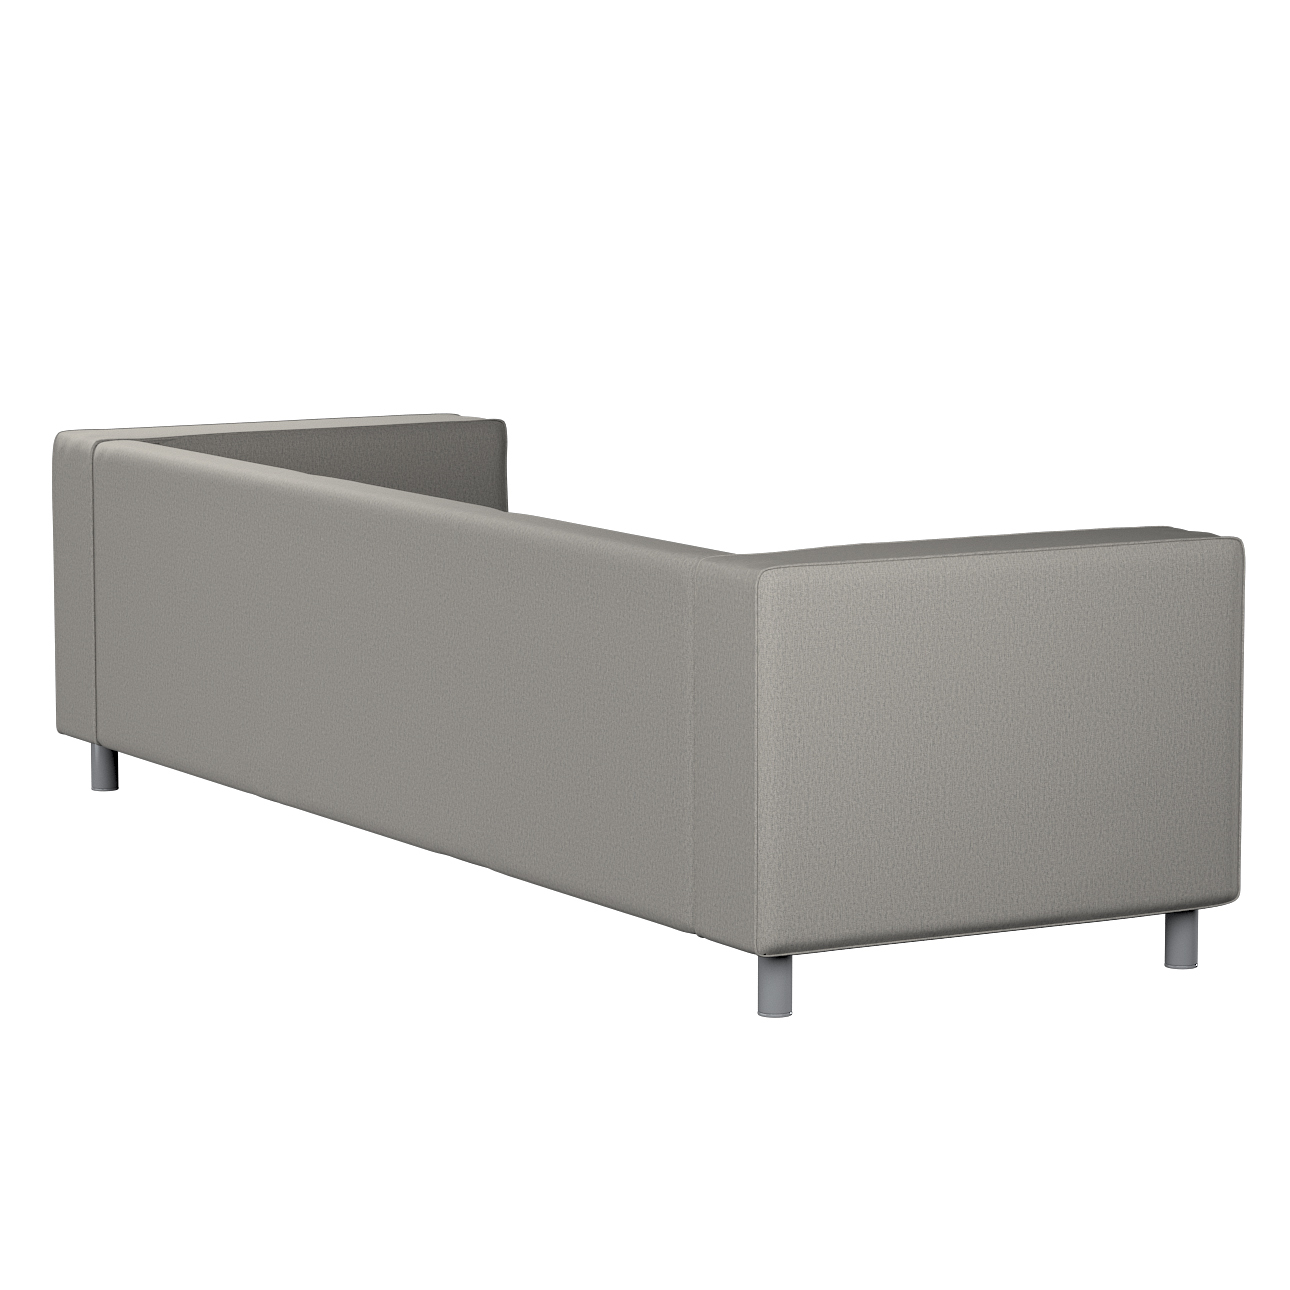 Bezug für Klippan 4-Sitzer Sofa, grau, Bezug für Klippan 4-Sitzer, Madrid ( günstig online kaufen